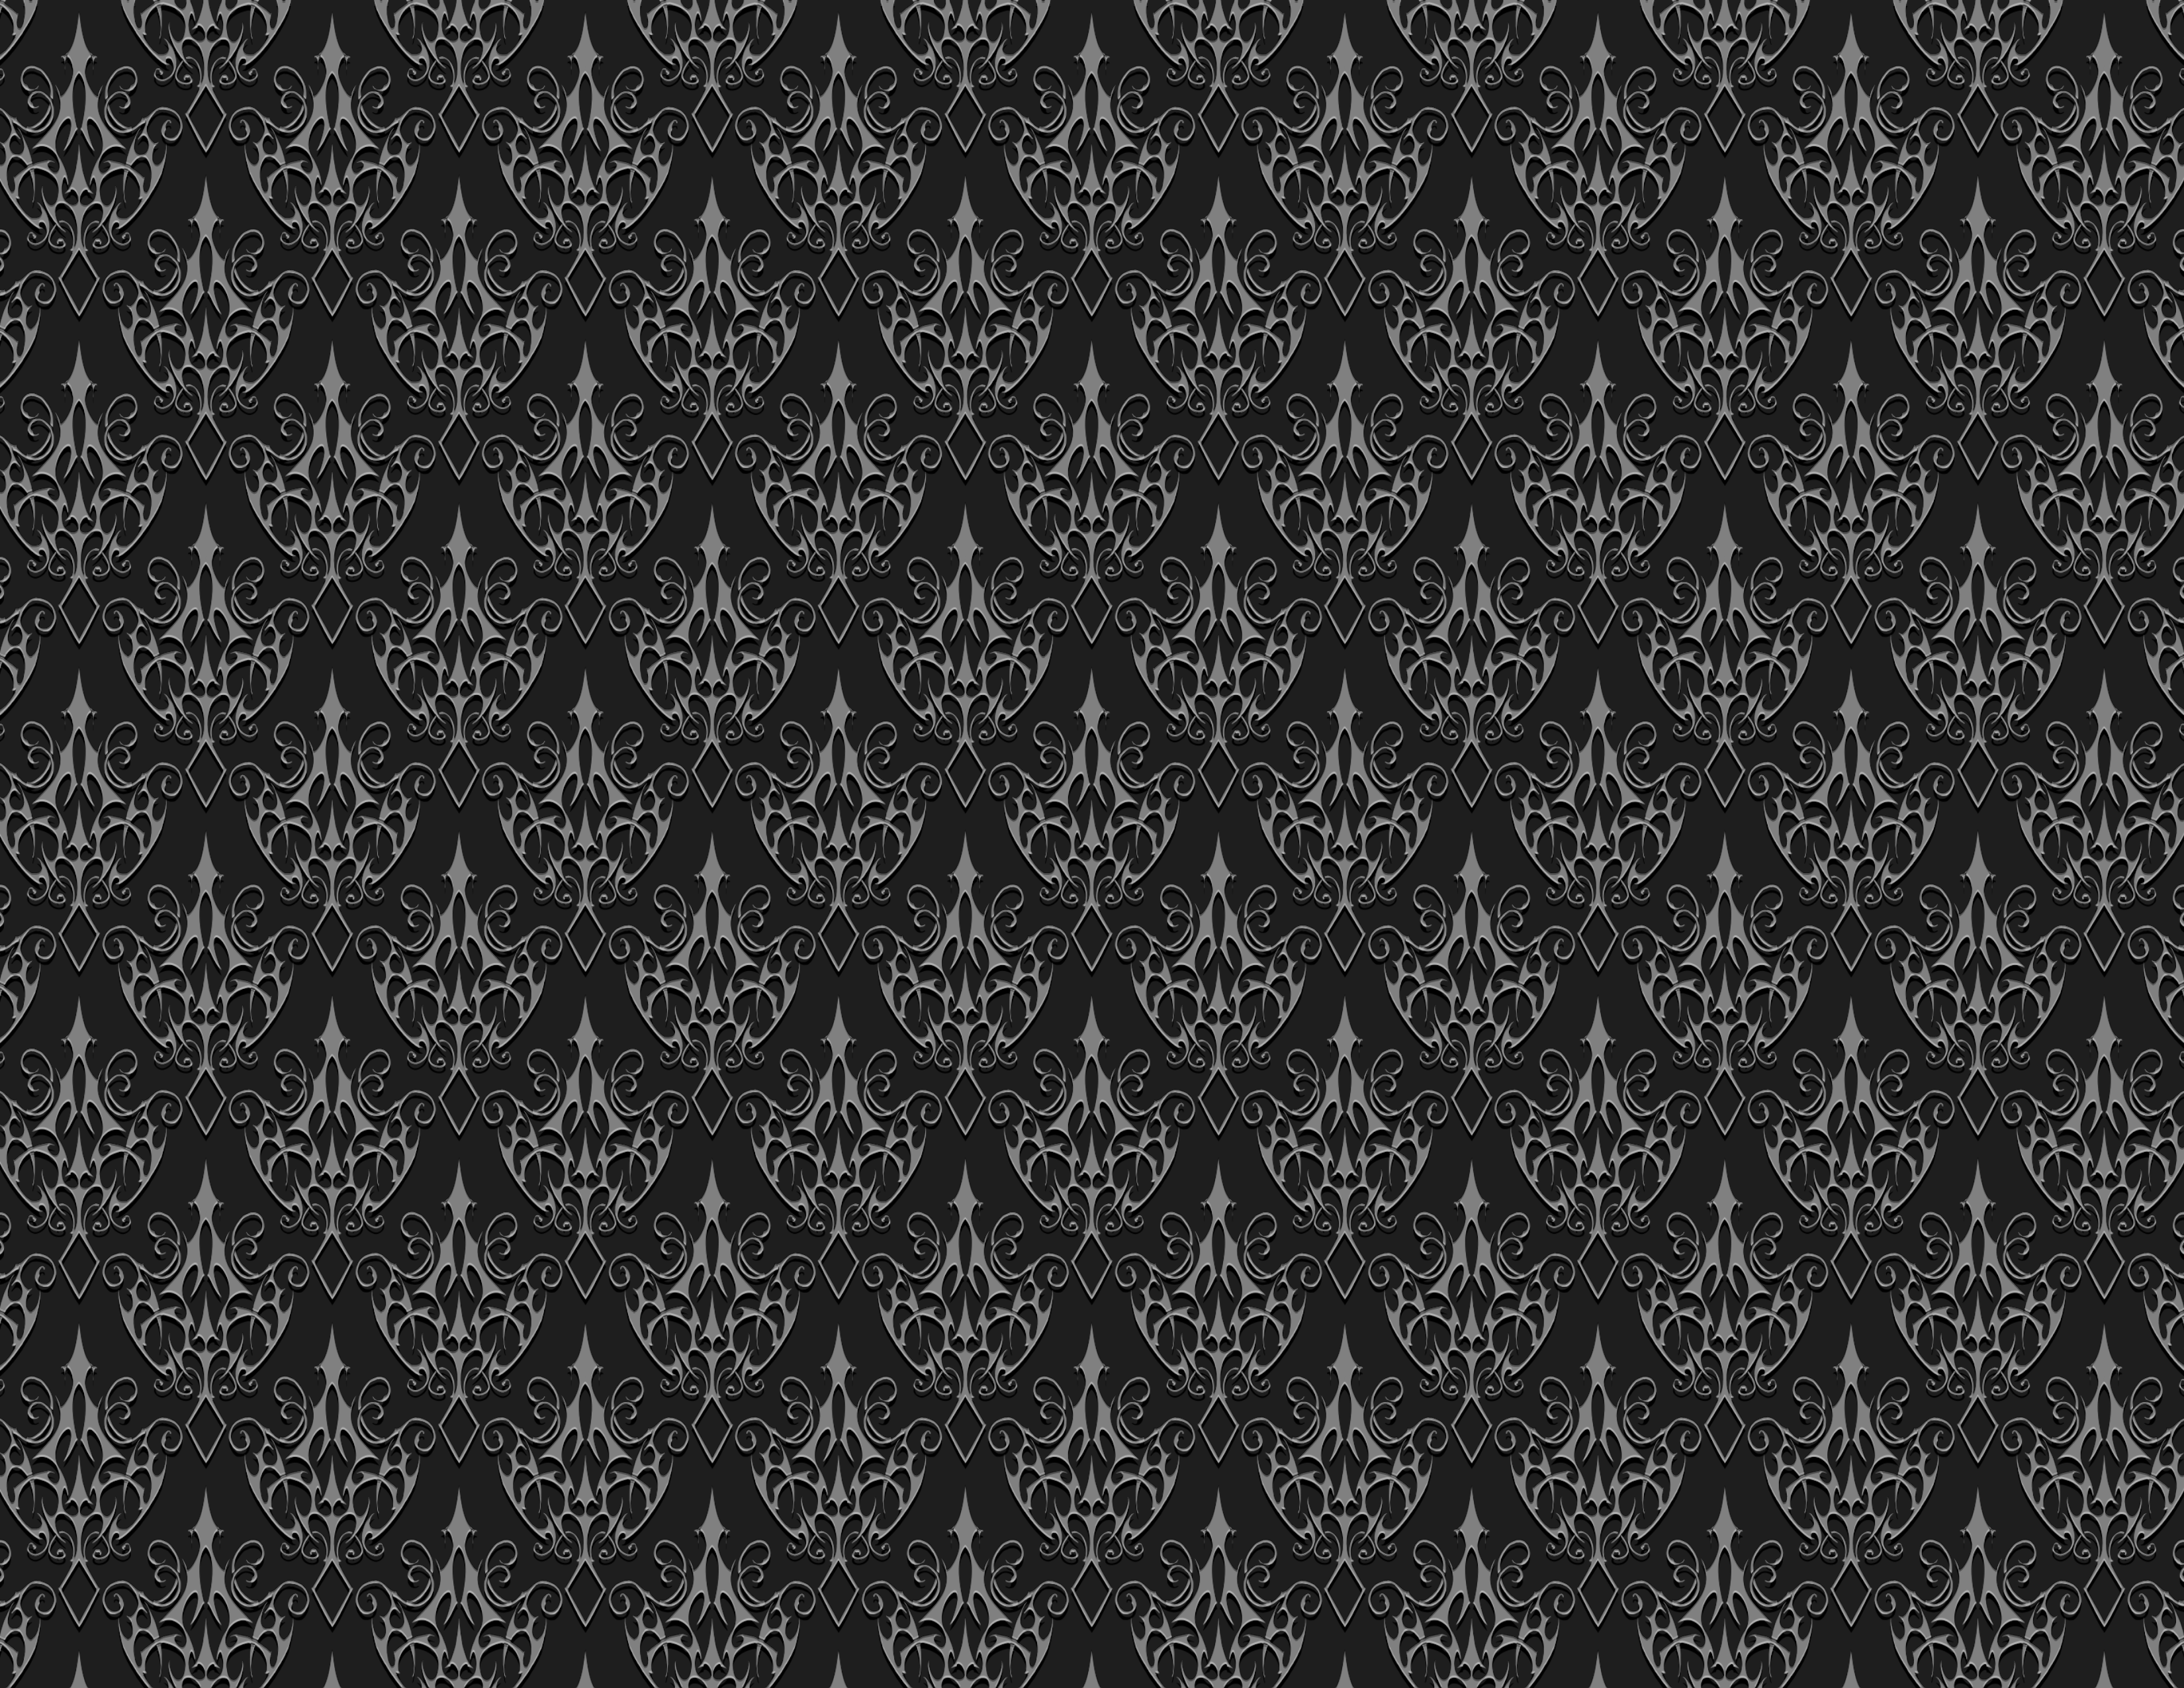 General 3300x2550 minimalism pattern dark texture